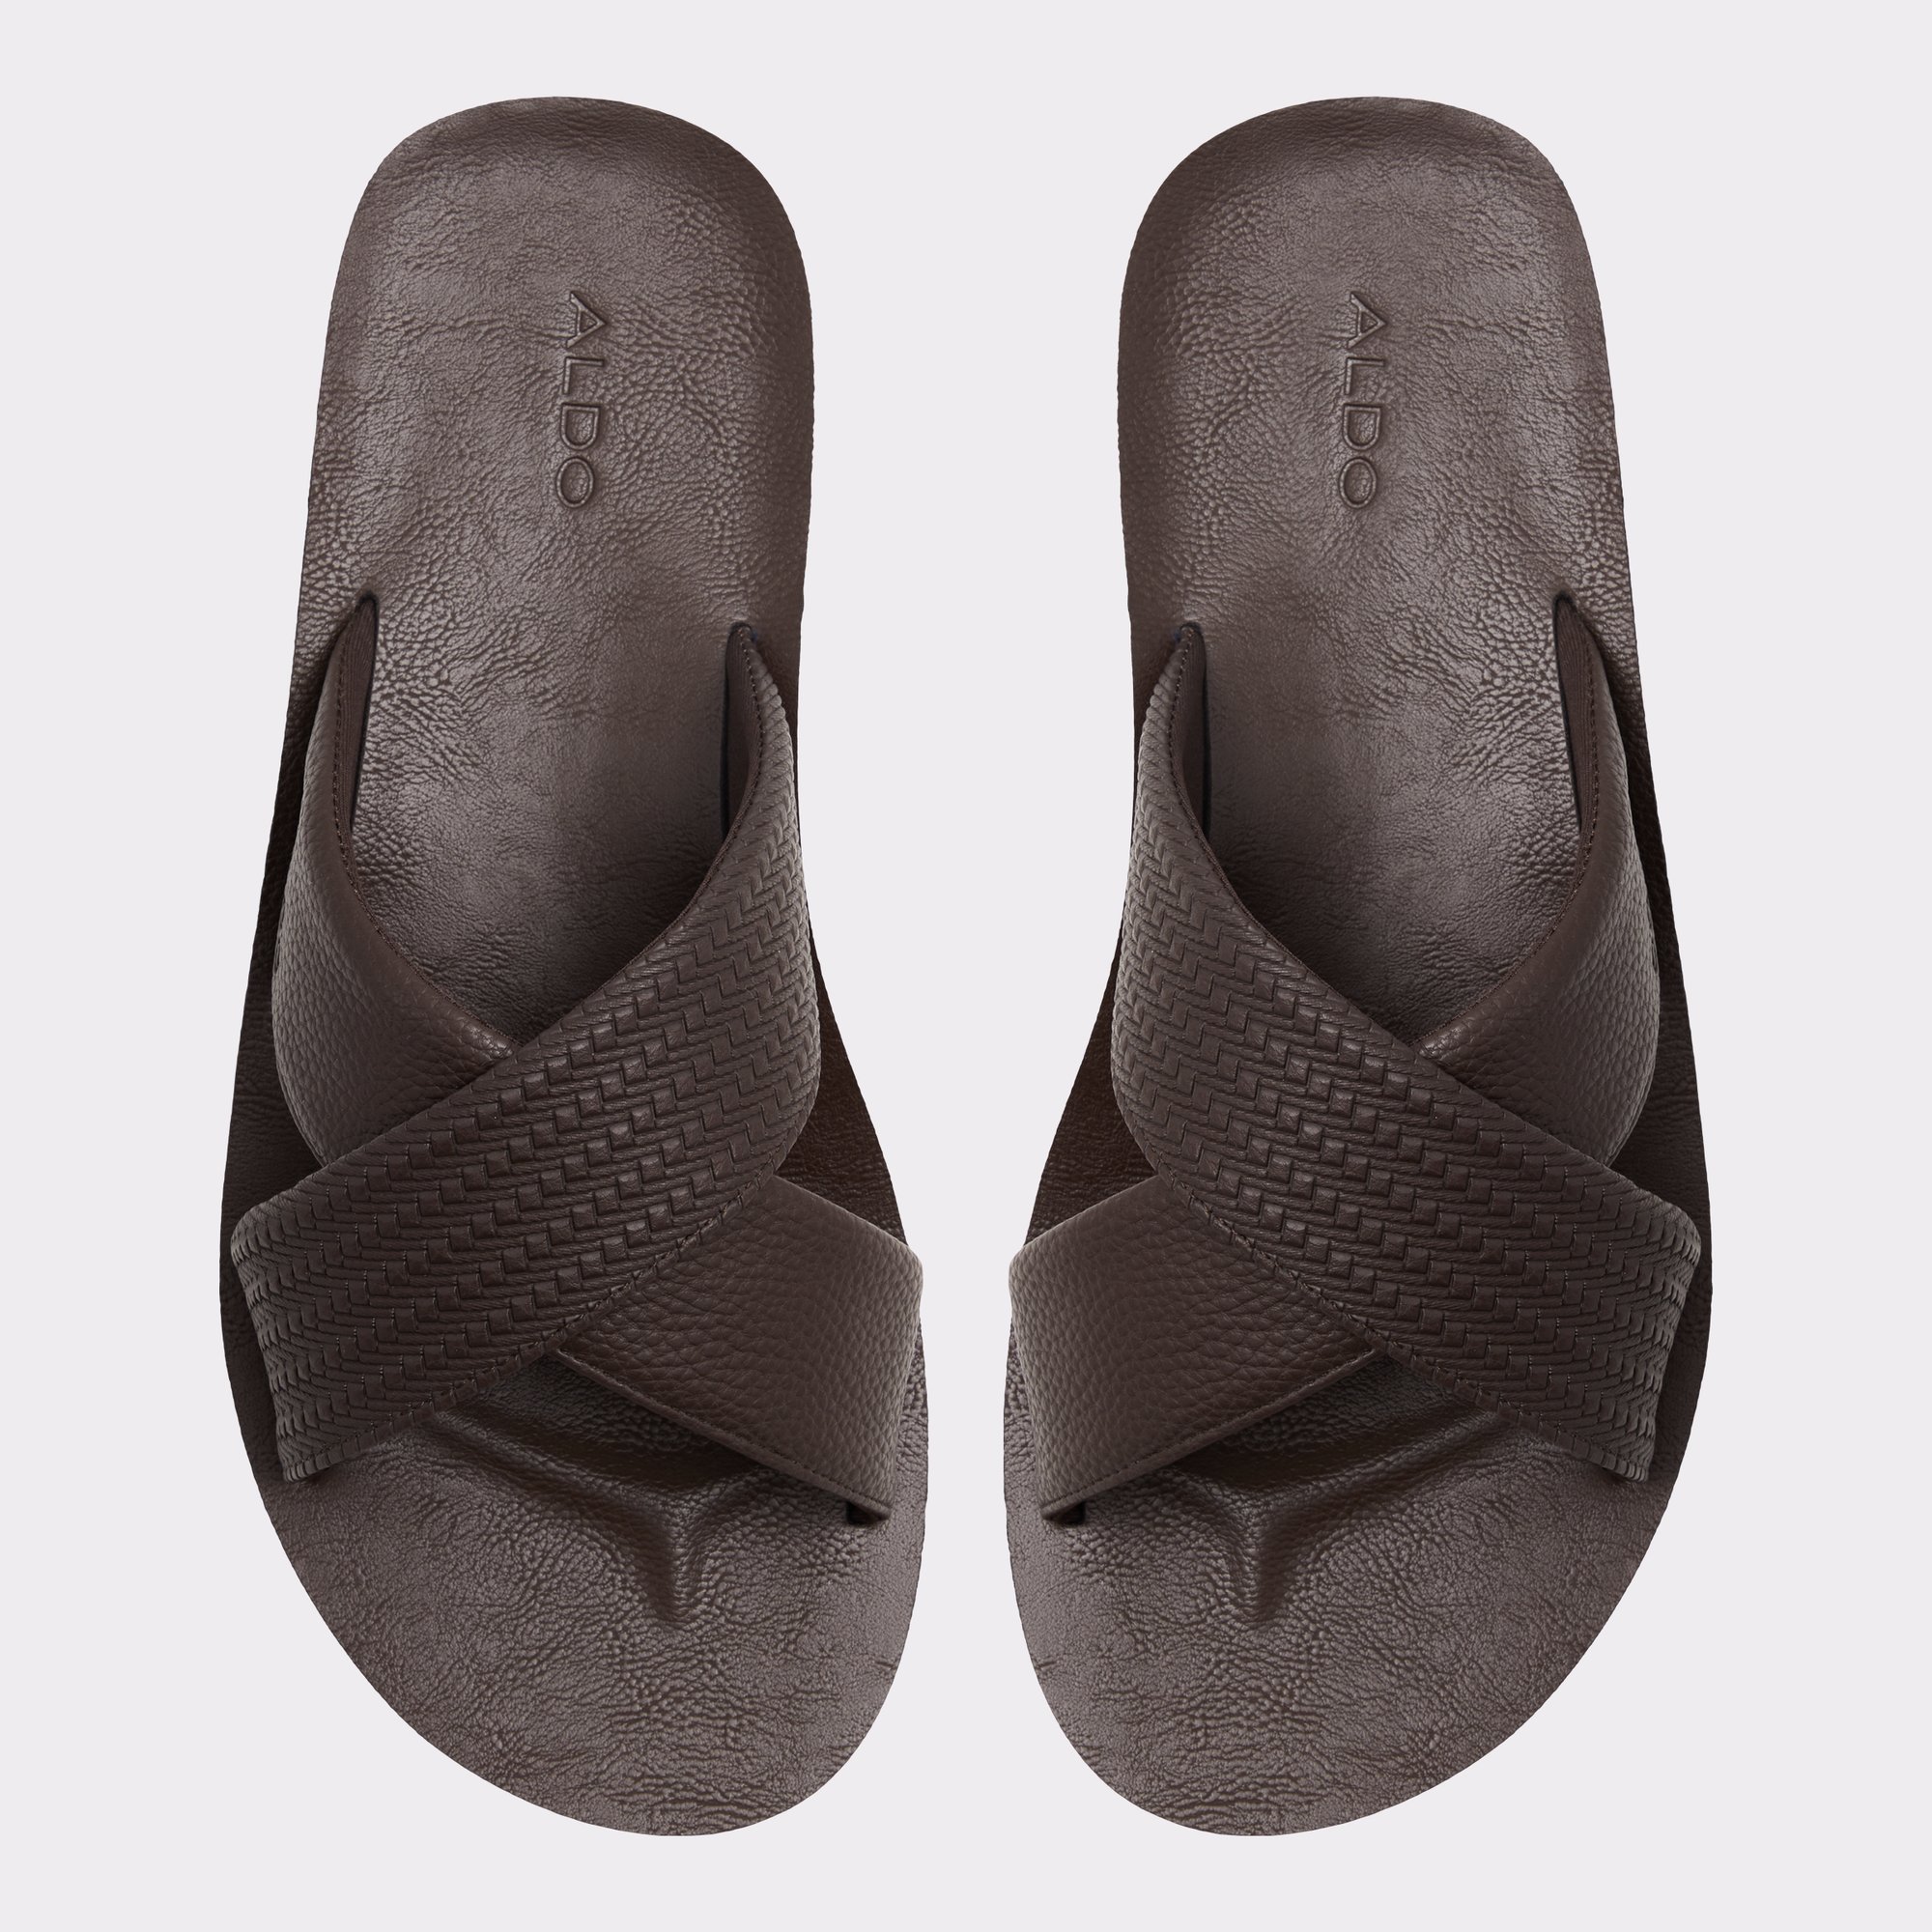 Stmock Other Brown Men's Sandals & Slides | ALDO Canada